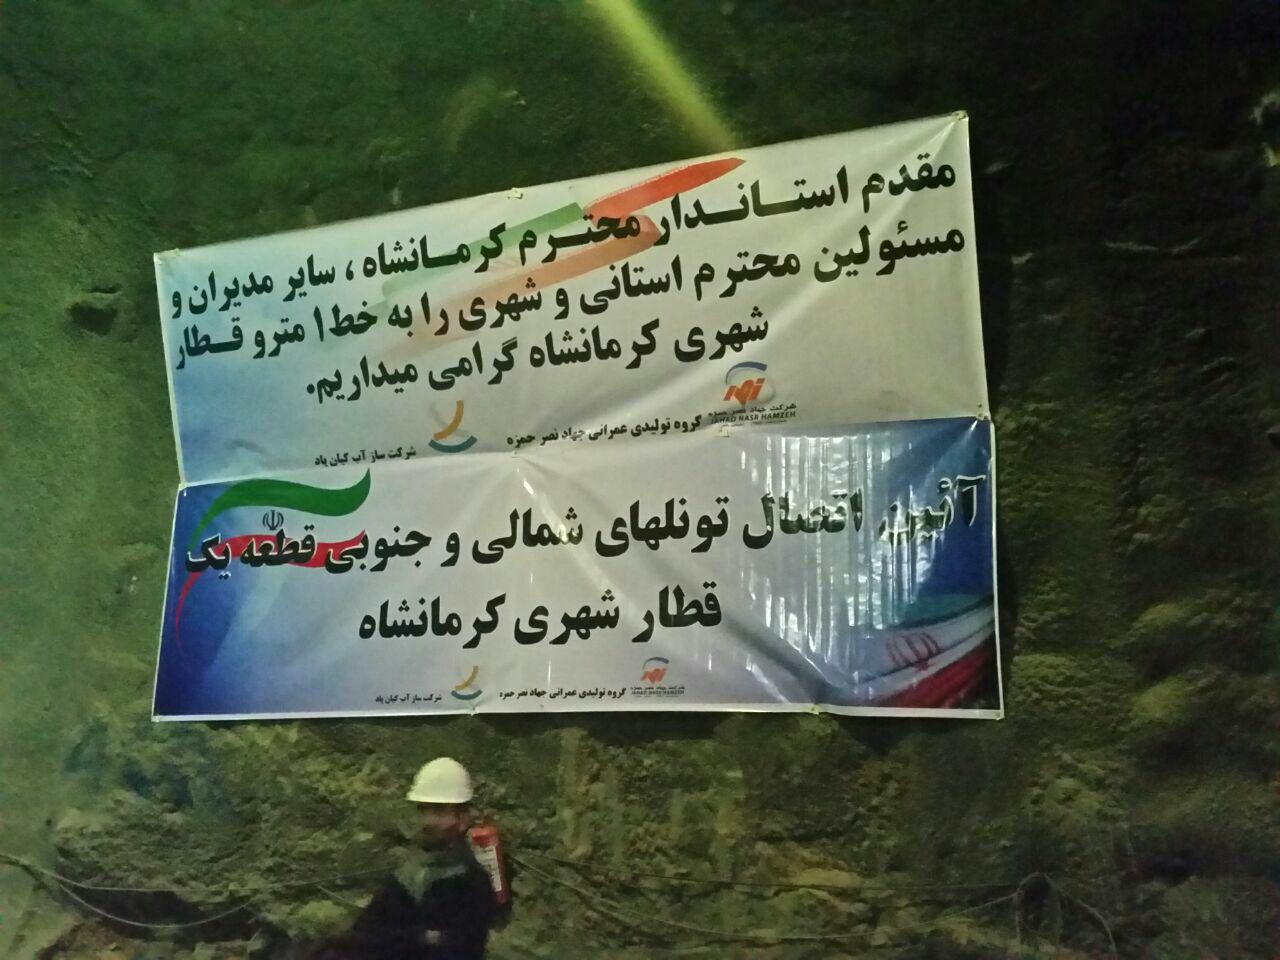 “تونل” قطار شهری کرمانشاه افتتاح شد